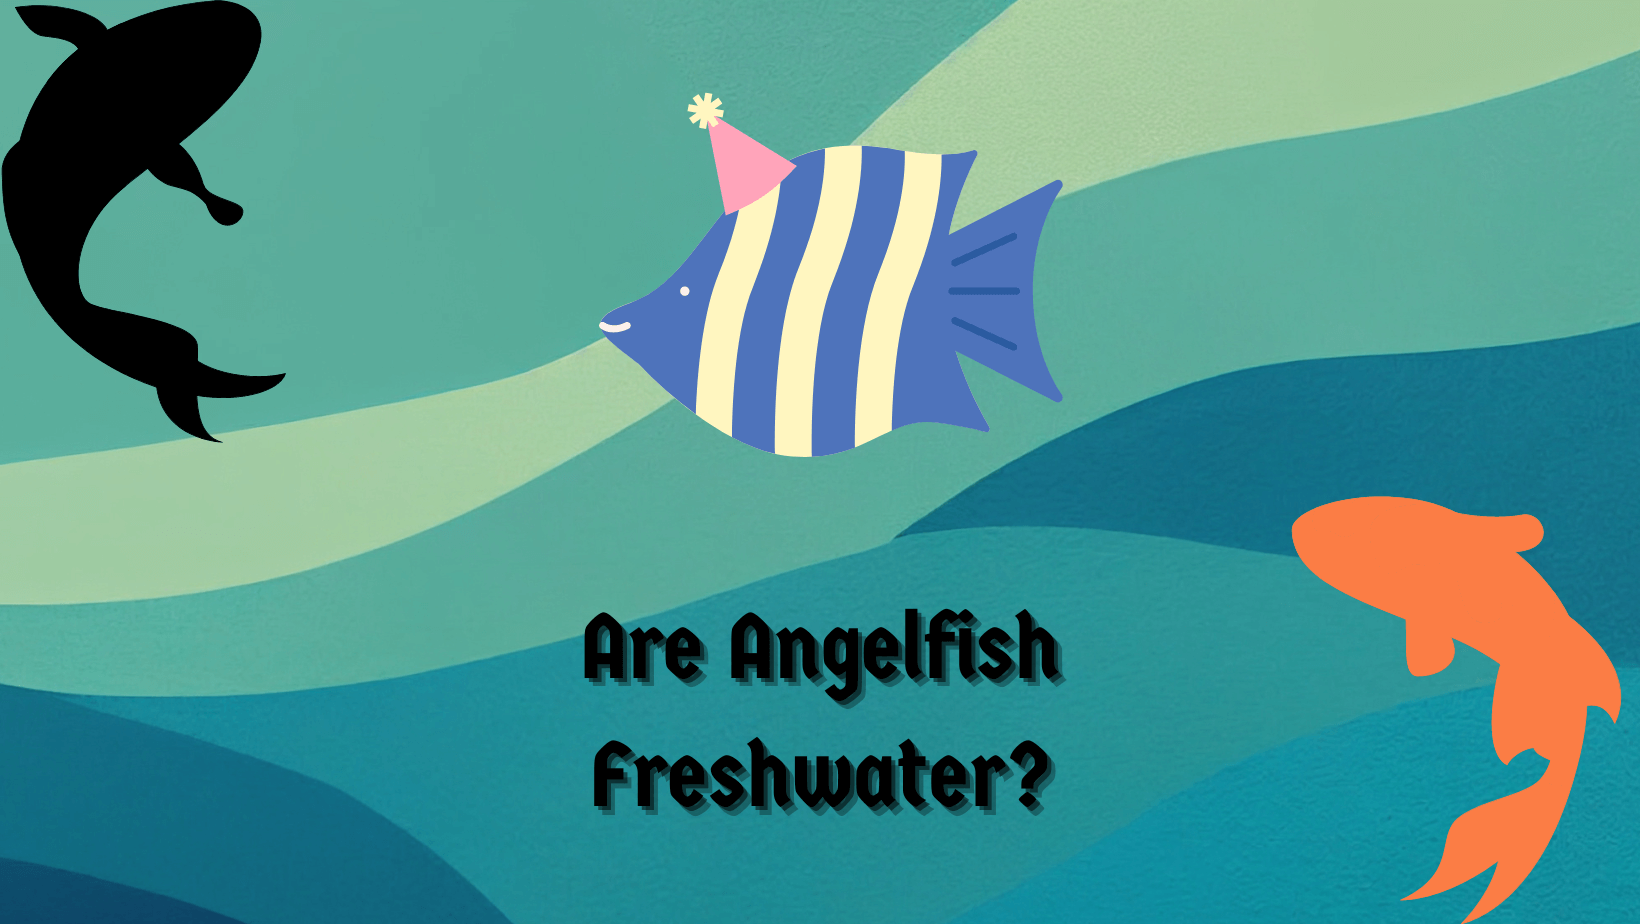 Are Angelfish Freshwater?